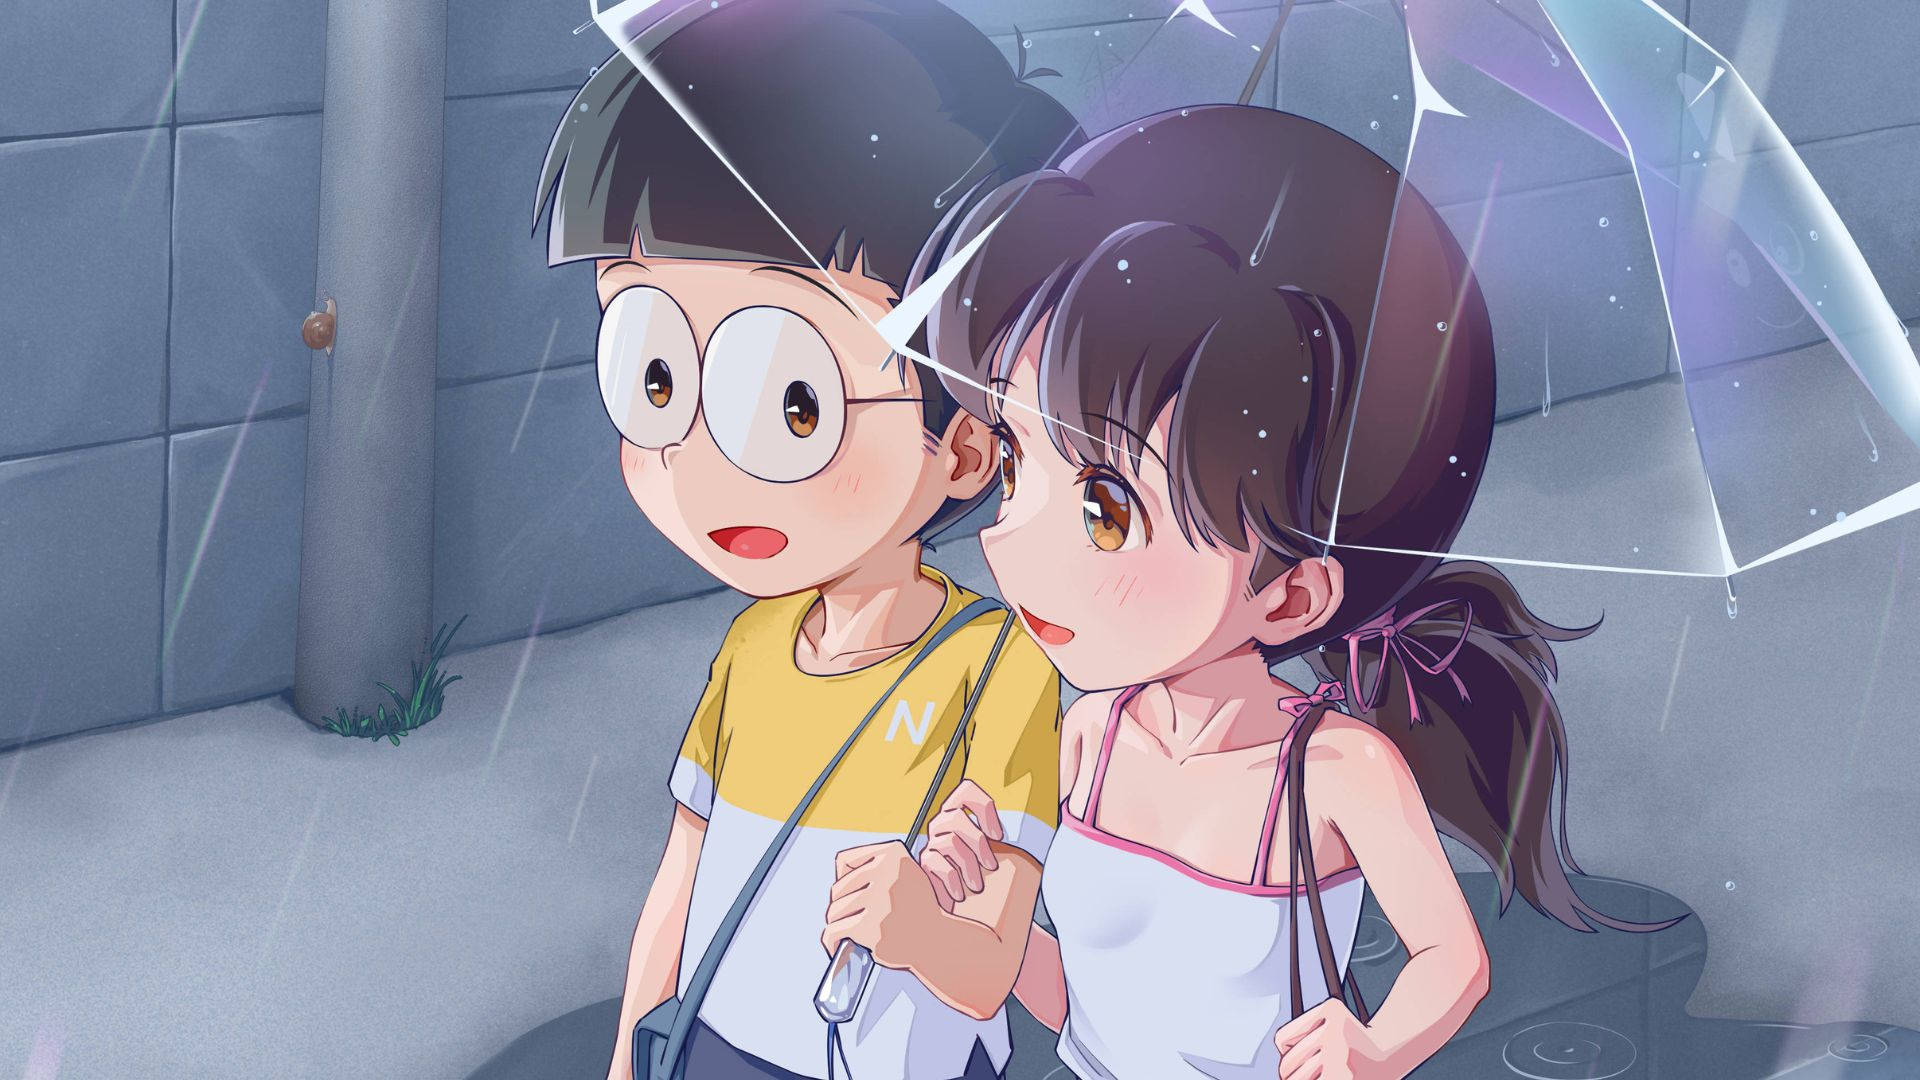 Shizuka,doraemon Och Nobita Under Paraplyet. Wallpaper